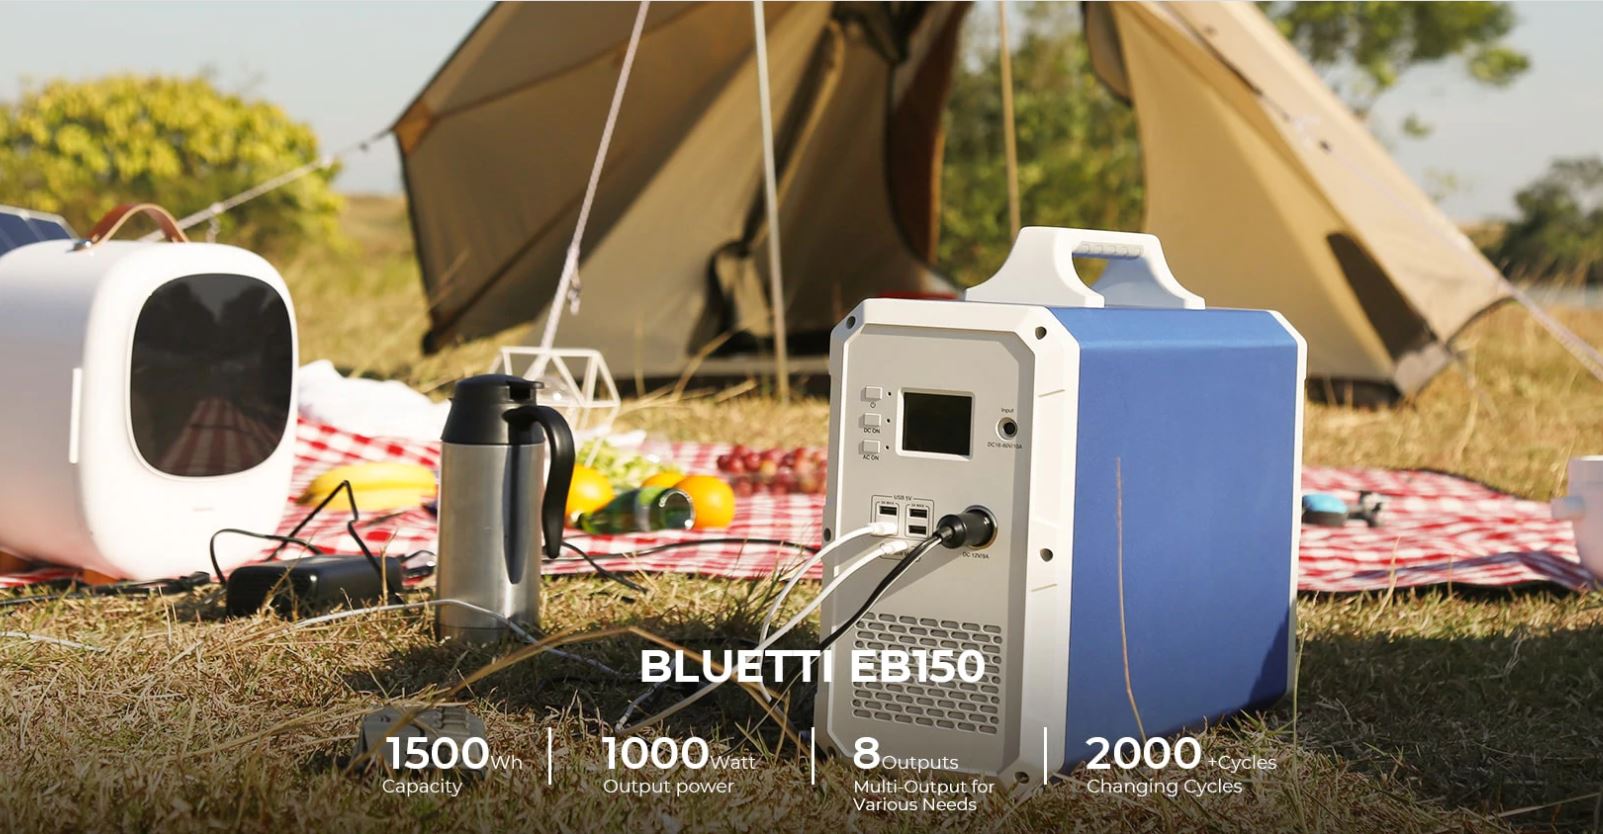 Przenośne stacje zasilania Bluetti receptą na brak prądu - PowerOak Bluetti EB150